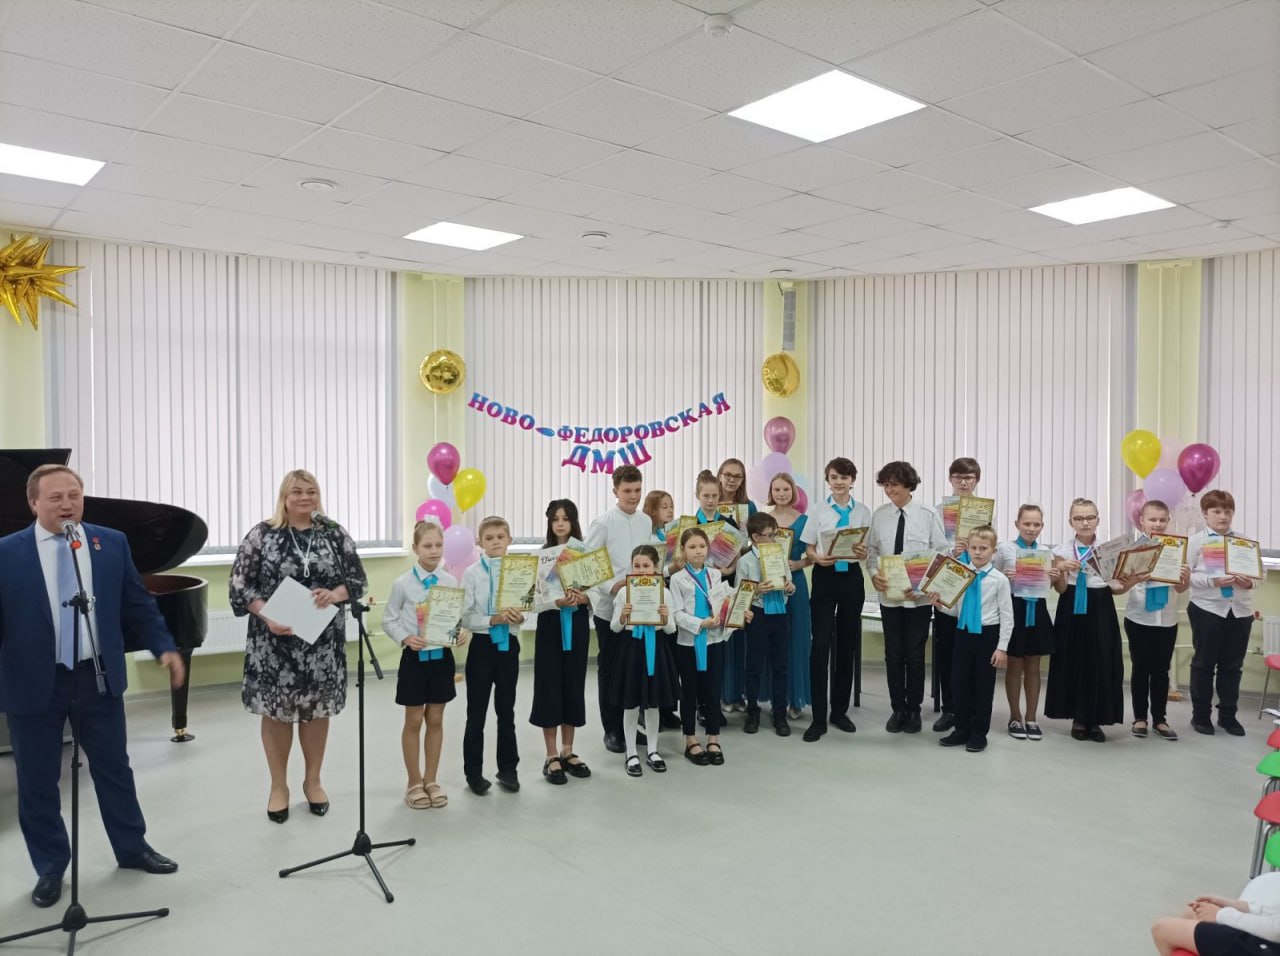 Празник у выпускников, или Как ученики Новофедоровской ДМШ выступили на отчетном концерте